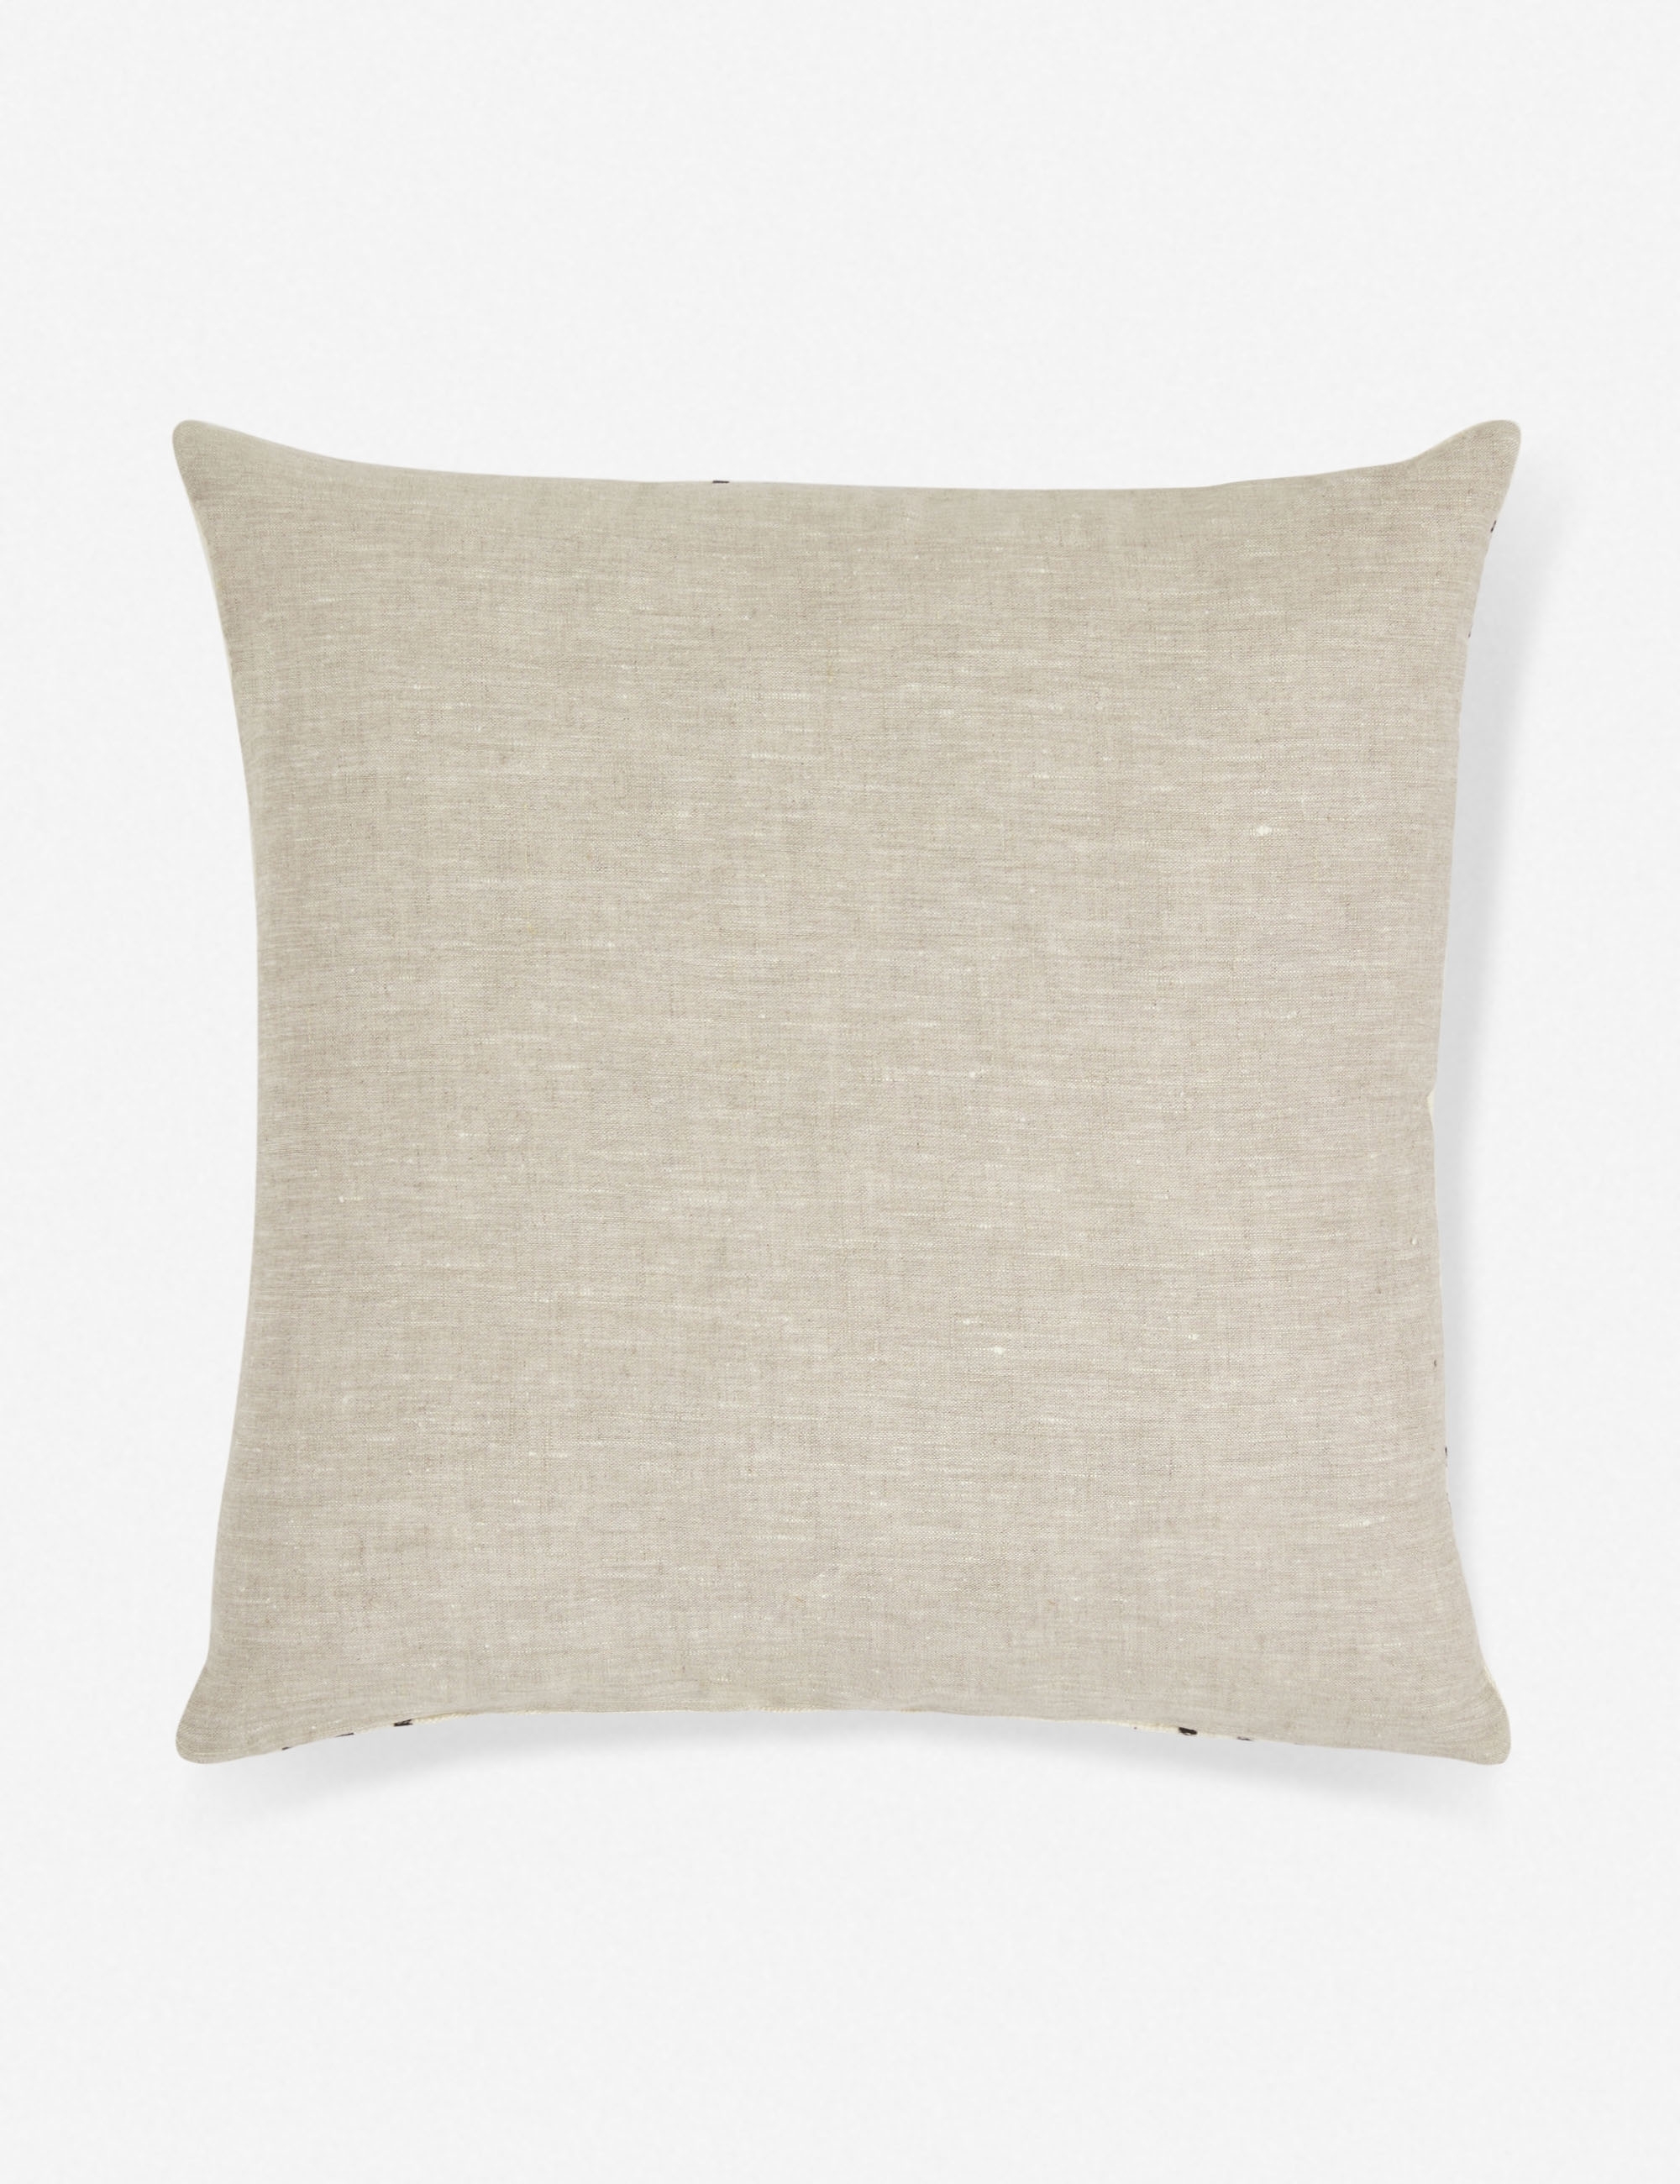 Sasha Mudcloth Pillow, 20" x 20" - Image 2